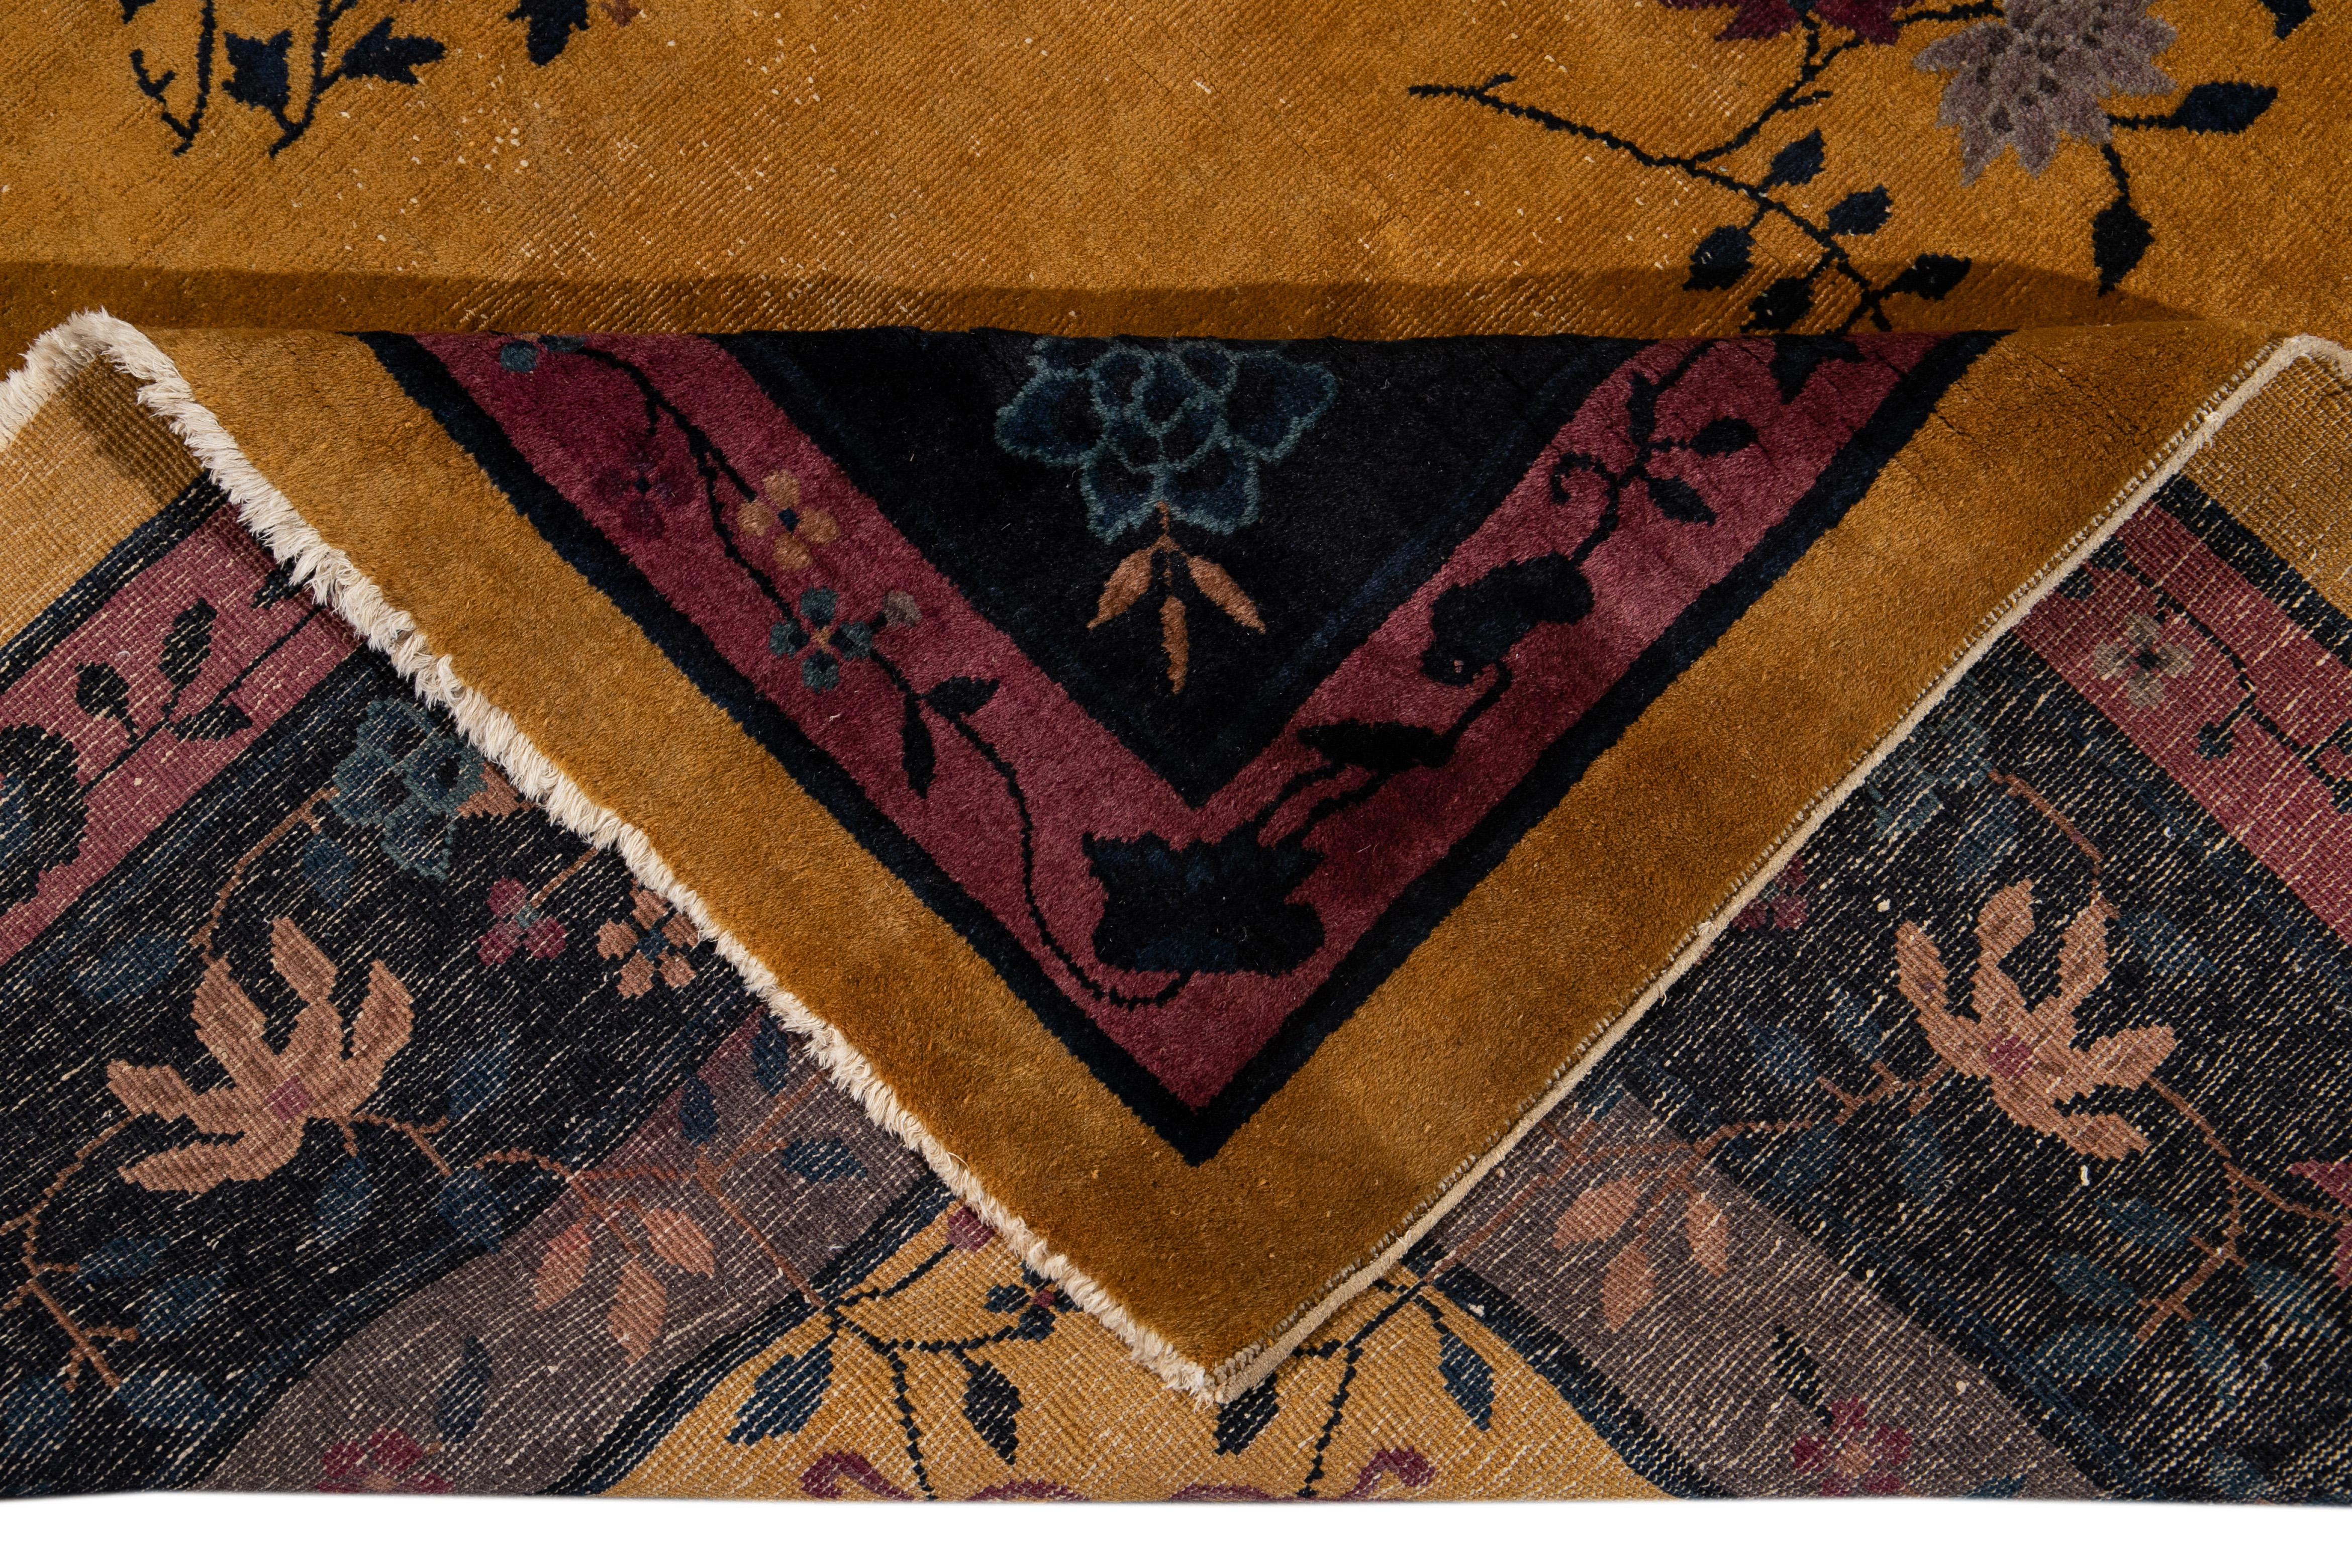 Magnifique tapis Art déco chinois ancien, en laine nouée à la main, avec un champ de verge d'or, un cadre bleu marine, rouge, et des accents multicolores dans un subtil motif floral chinois classique.

Ce tapis mesure : 9